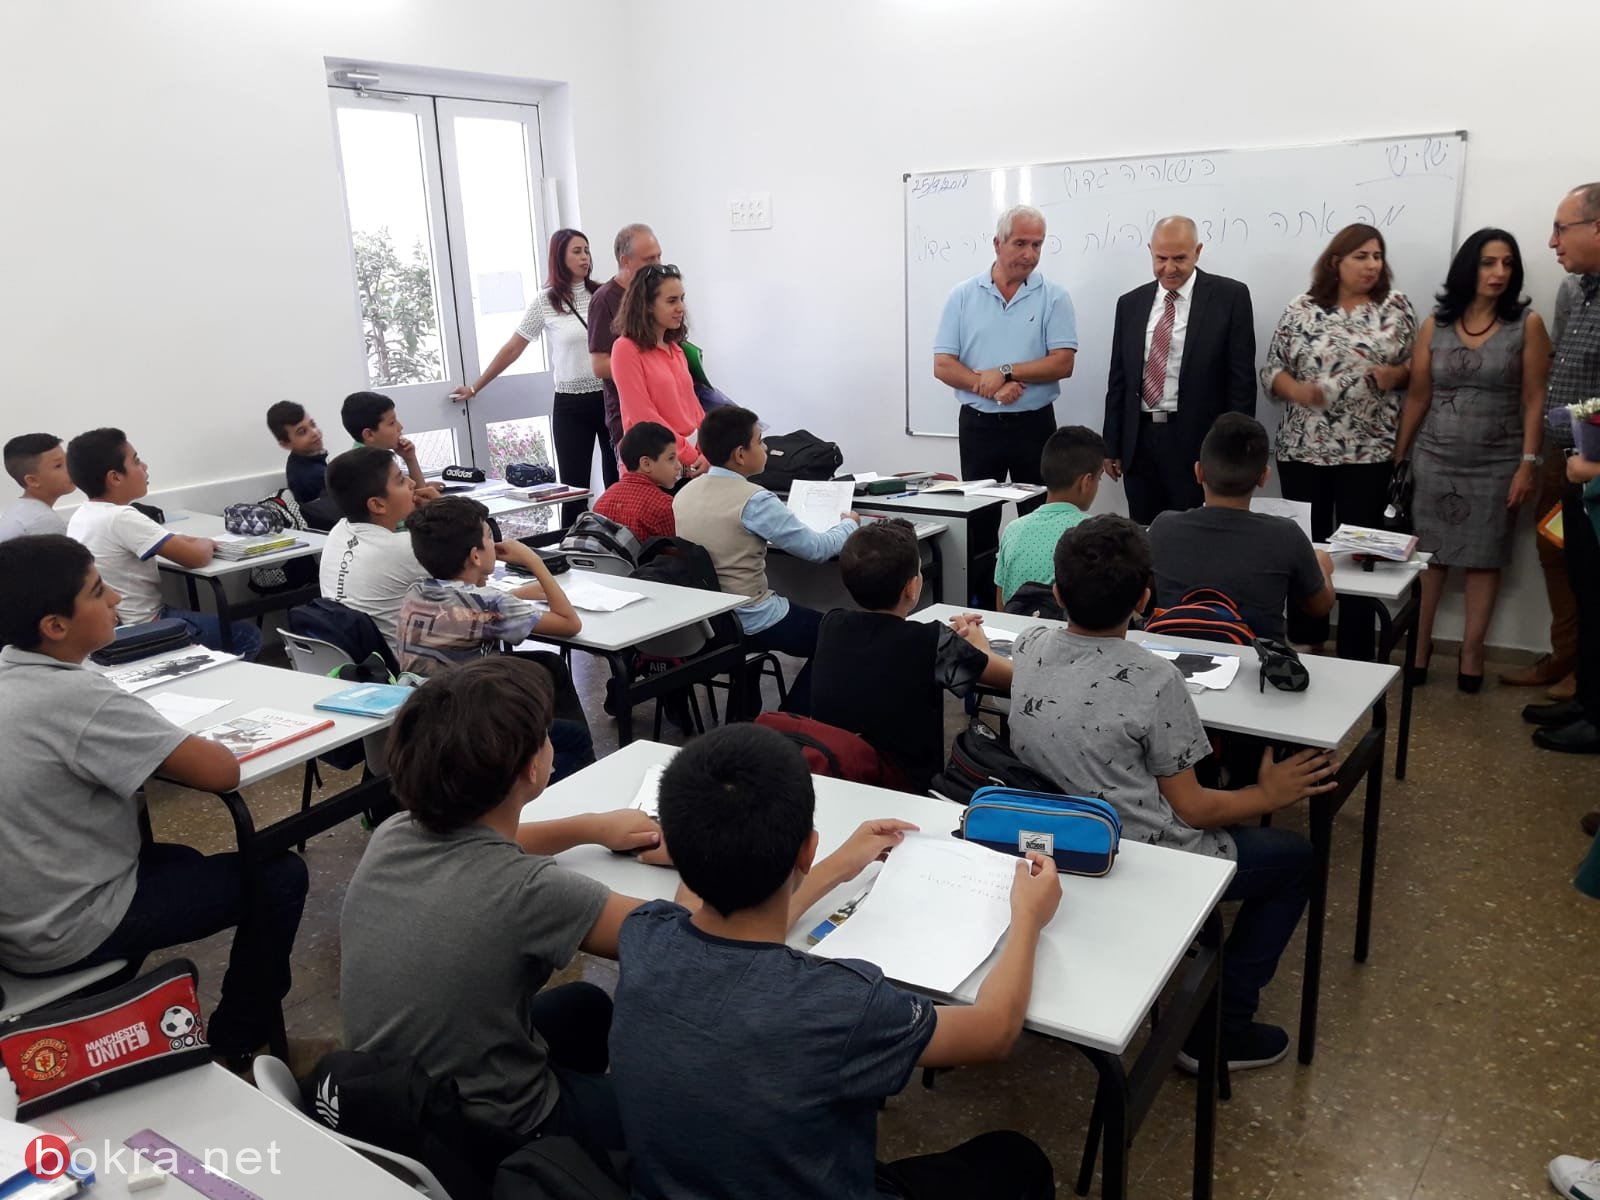 زيارة المدير العام للوزارة شموئيل ابواب لجهاز التّعليم في شرقي اورشليم القدس -7